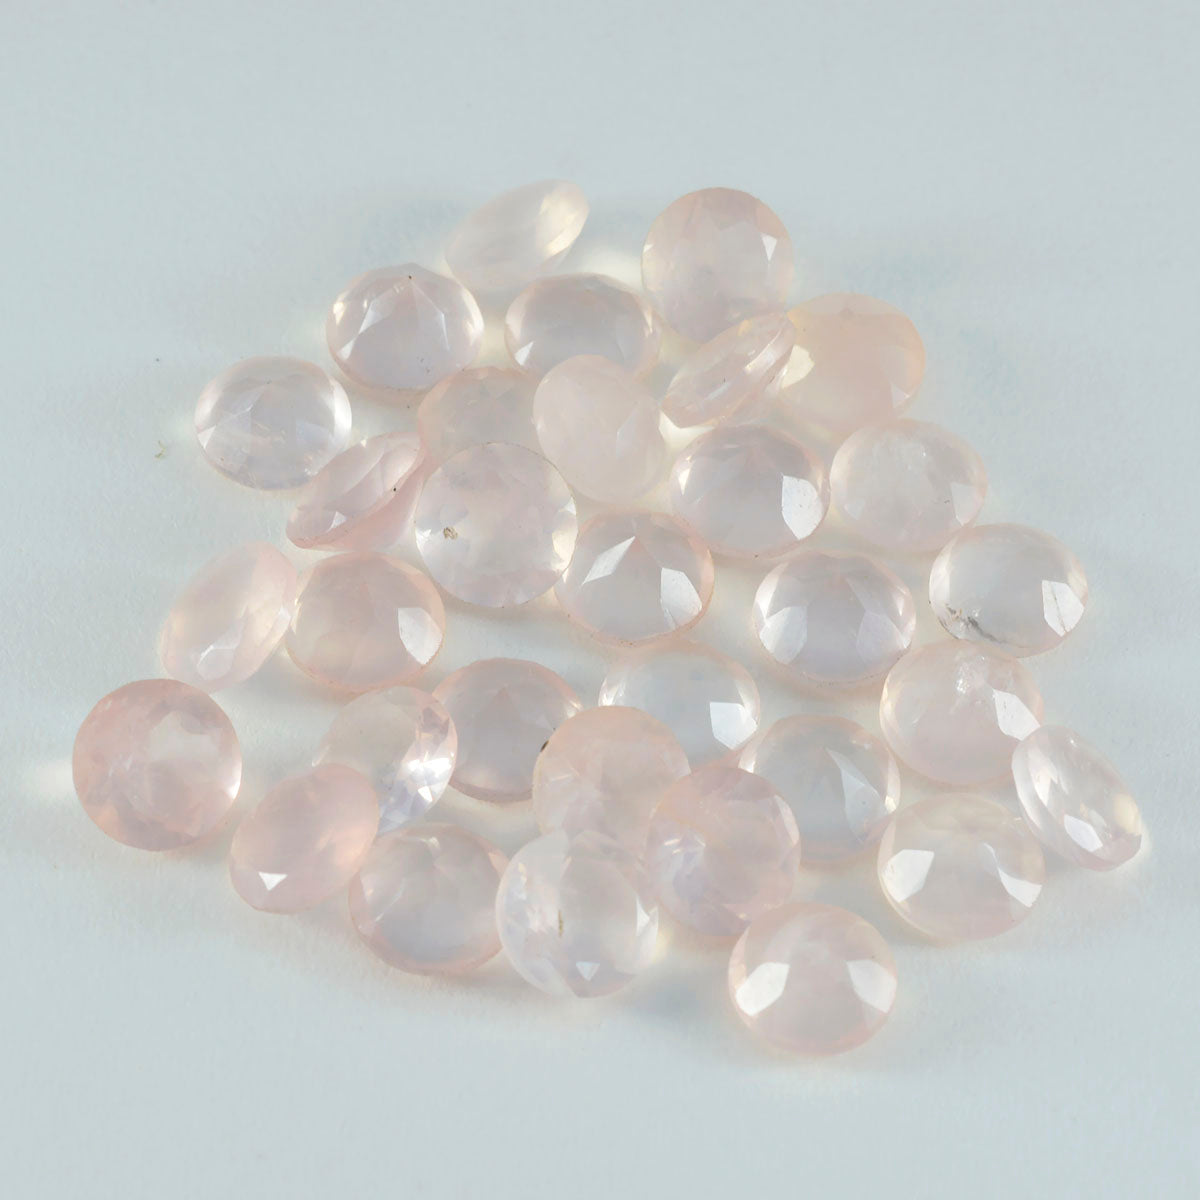 Riyogems 1pc quartz rose à facettes 7x7mm forme ronde bonne qualité pierres précieuses en vrac